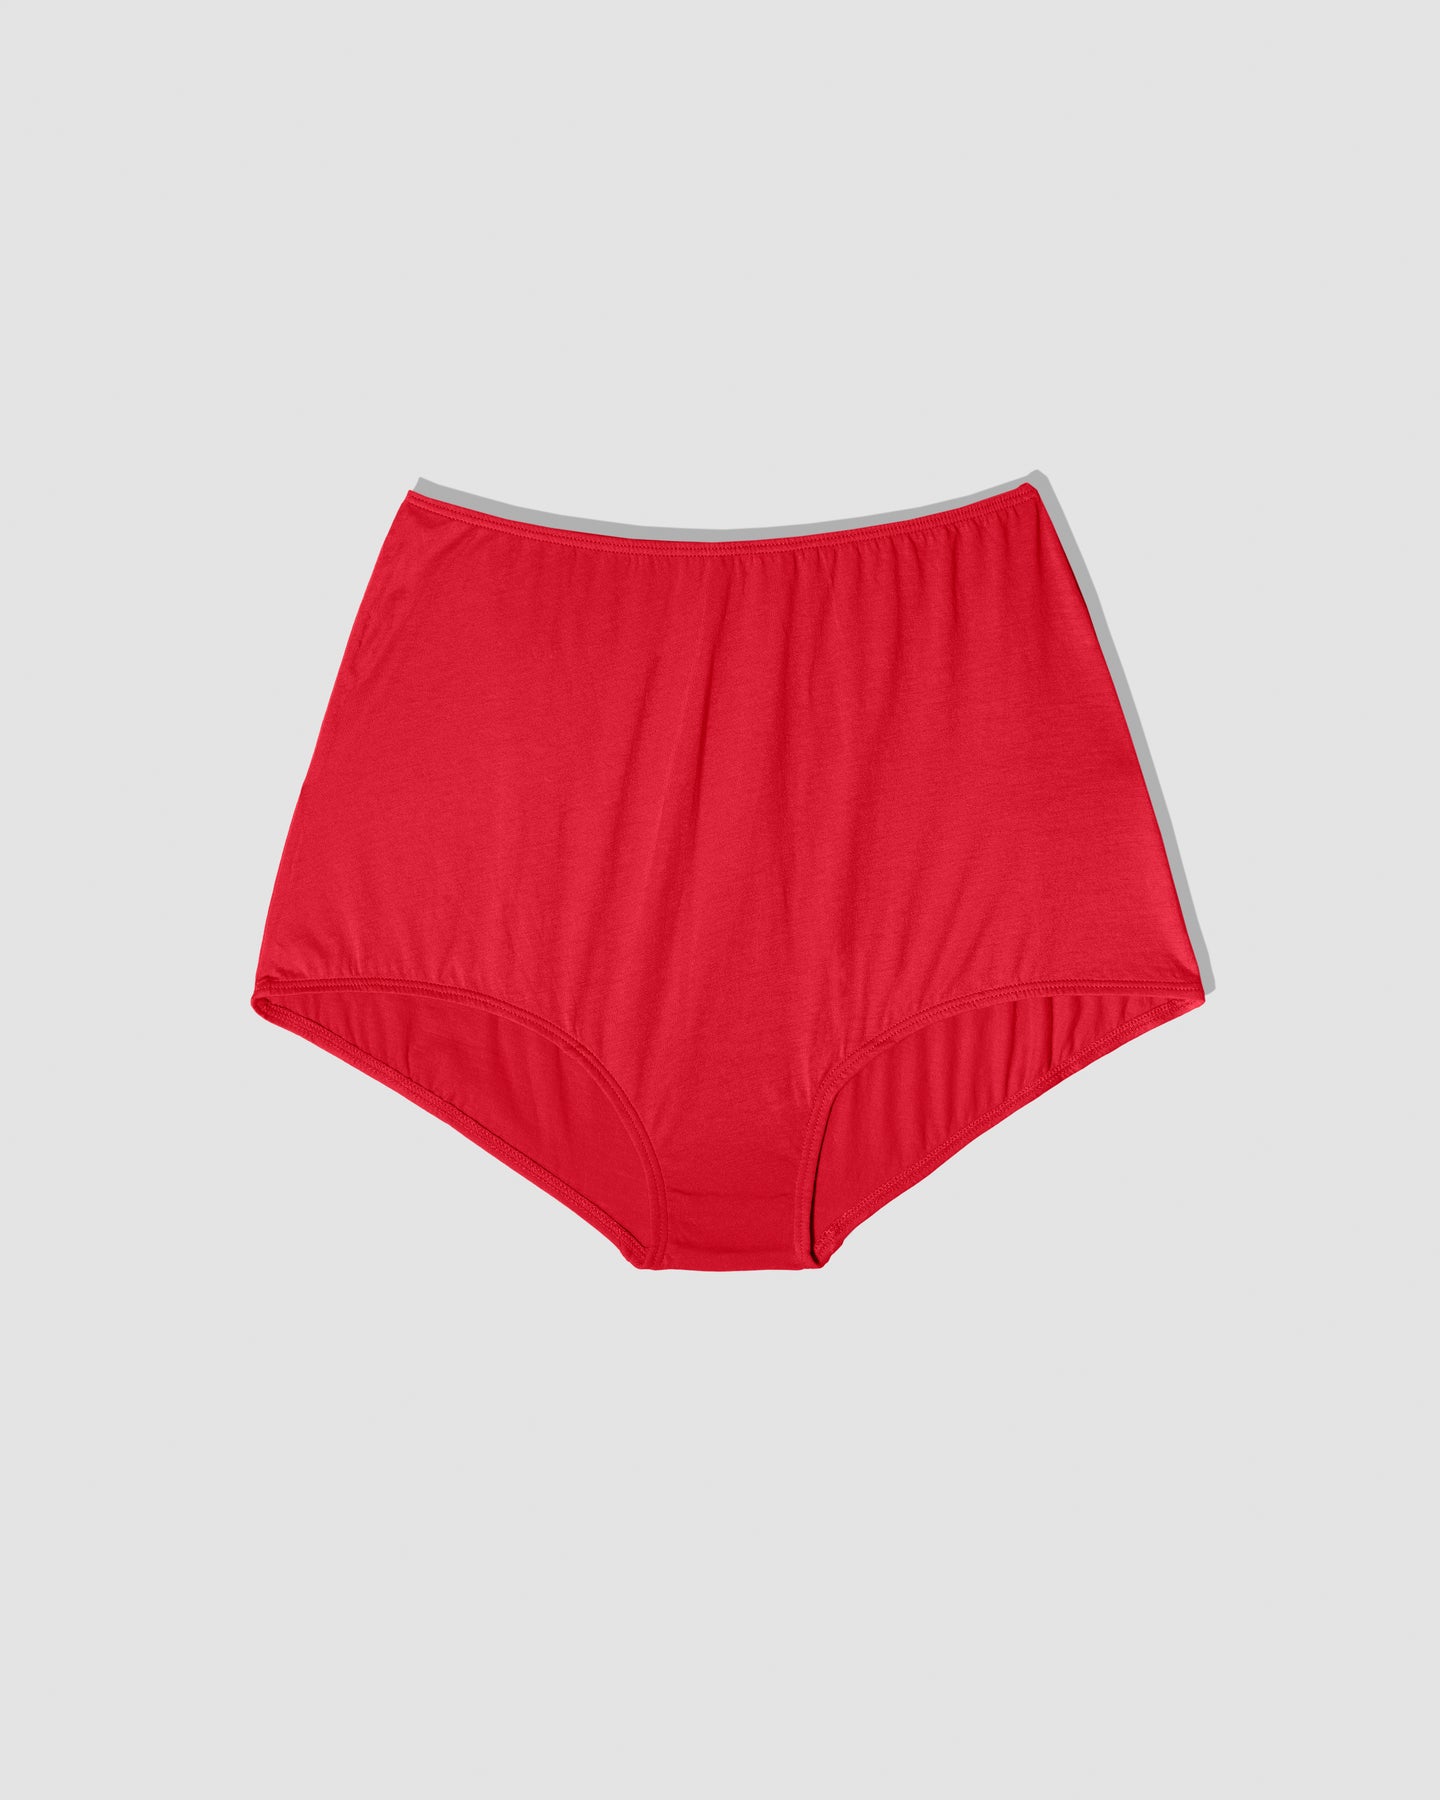 Soma Women's Vanishing Tummy Retro Brief Underwear In Red Size